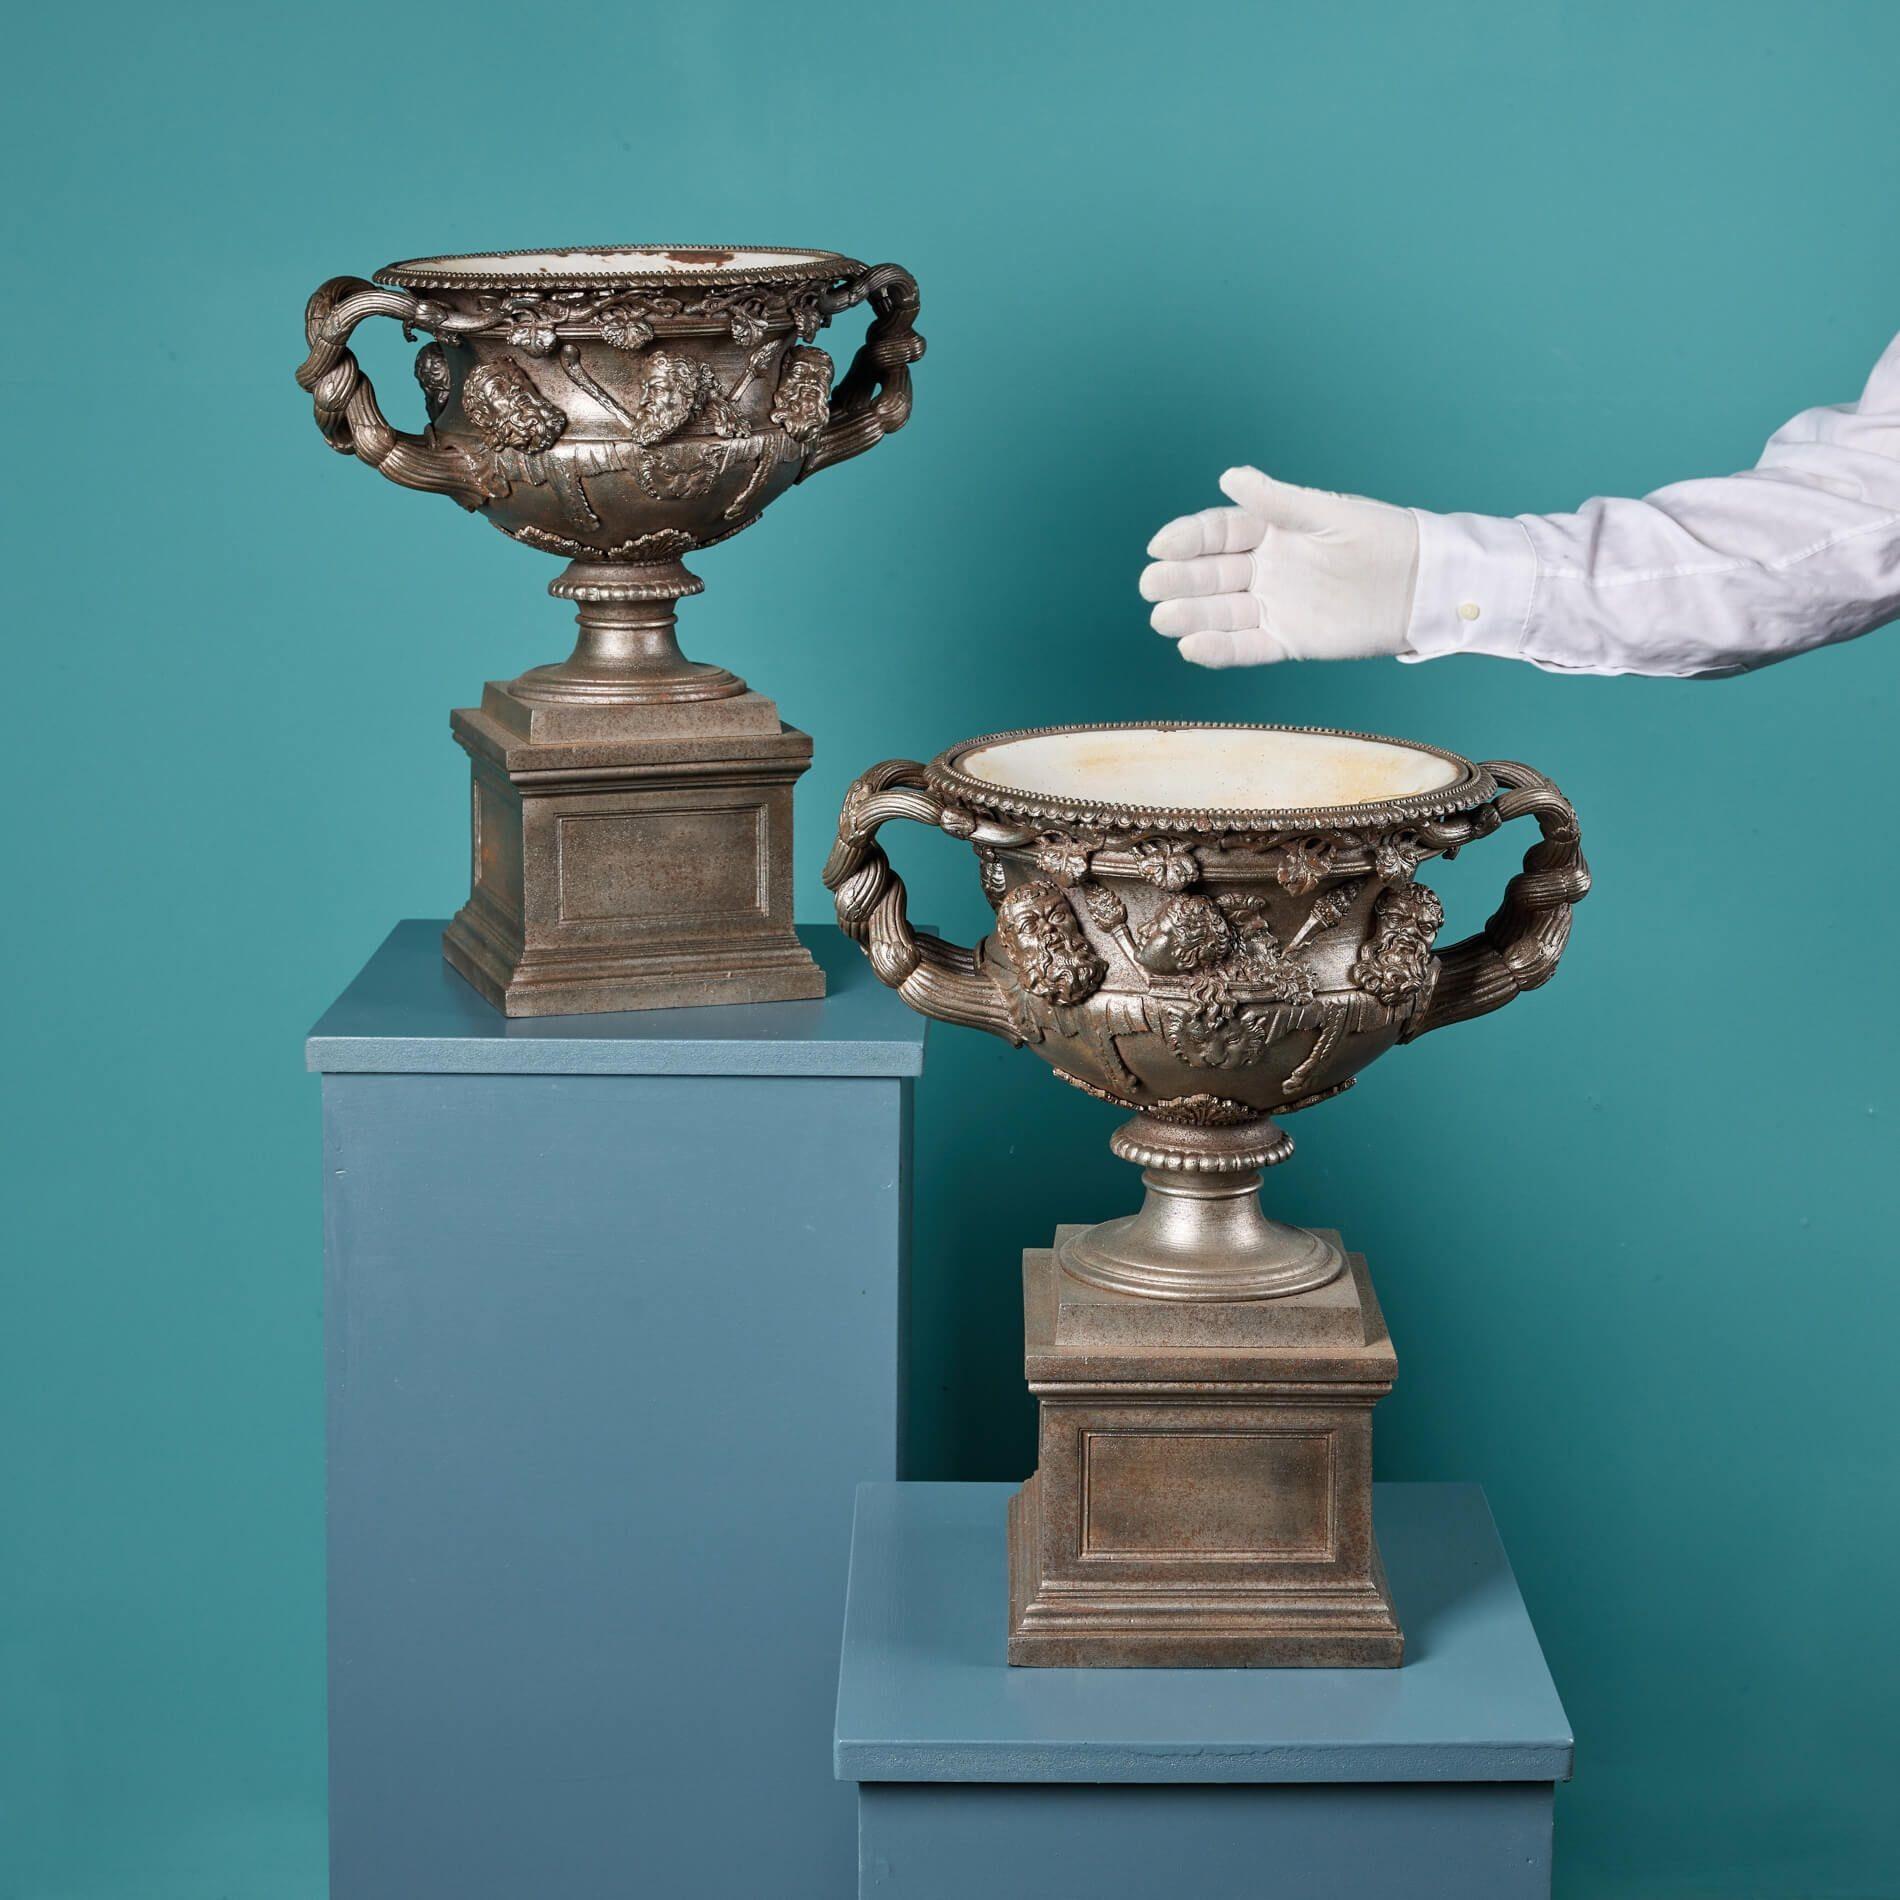 Ein sehr fein gegossenes Paar gusseiserner Modelle der berühmten Warwick-Vase um 1870. Während das Original der Warwick Vase eine kolossale Höhe von 6 Fuß hat, sind diese Repliken nur 40 cm hoch und verleihen einem Interieur, das auf einer Konsole,